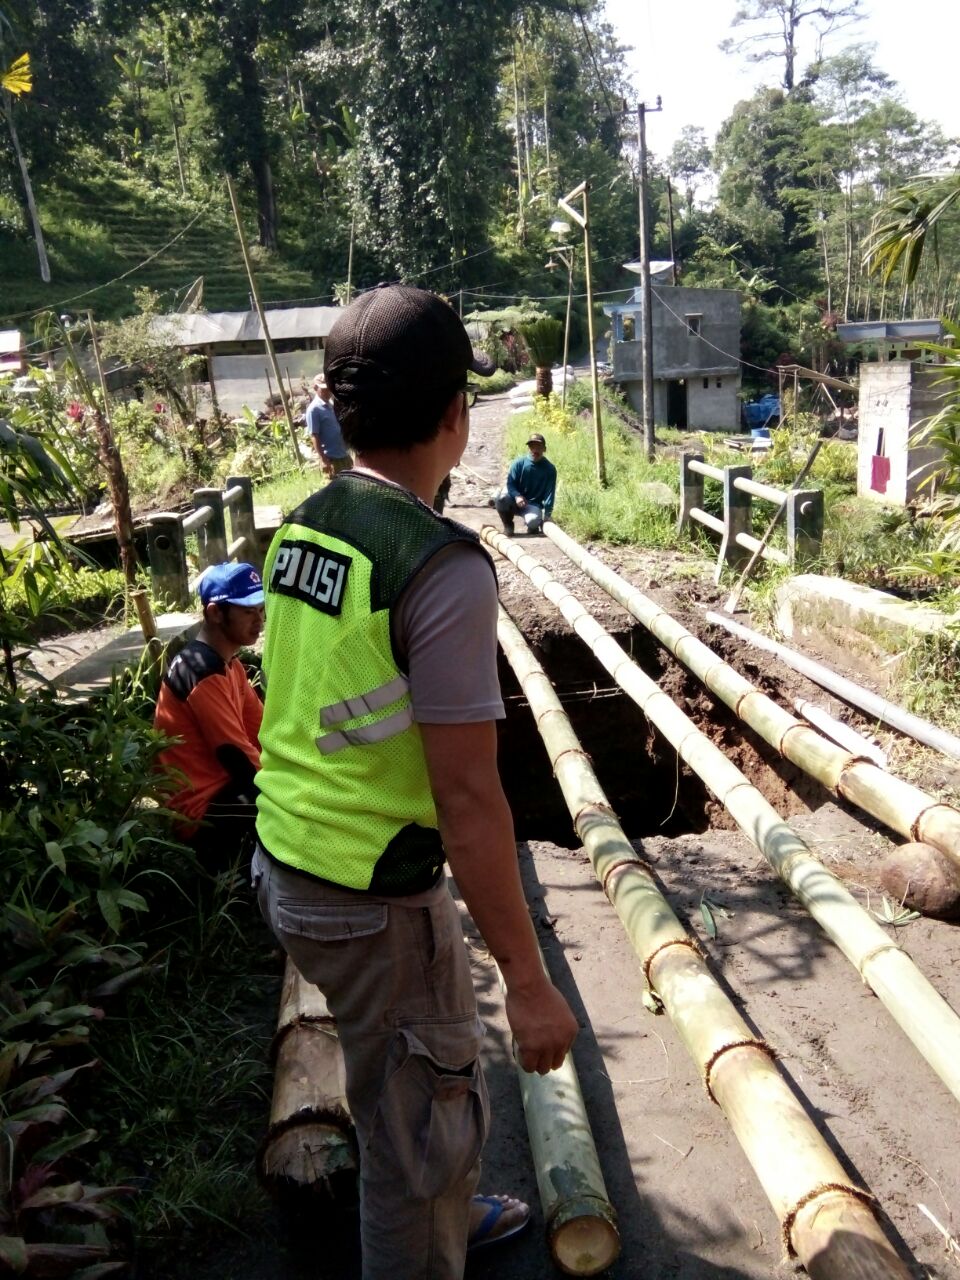 Bhabinkamtibmas Desa Pagersari Polsek Ngantang Polres Batu Melaksanakan Gotong Royong Perbaikan Jalan Sementara Karena Rusak Akibat Banjir